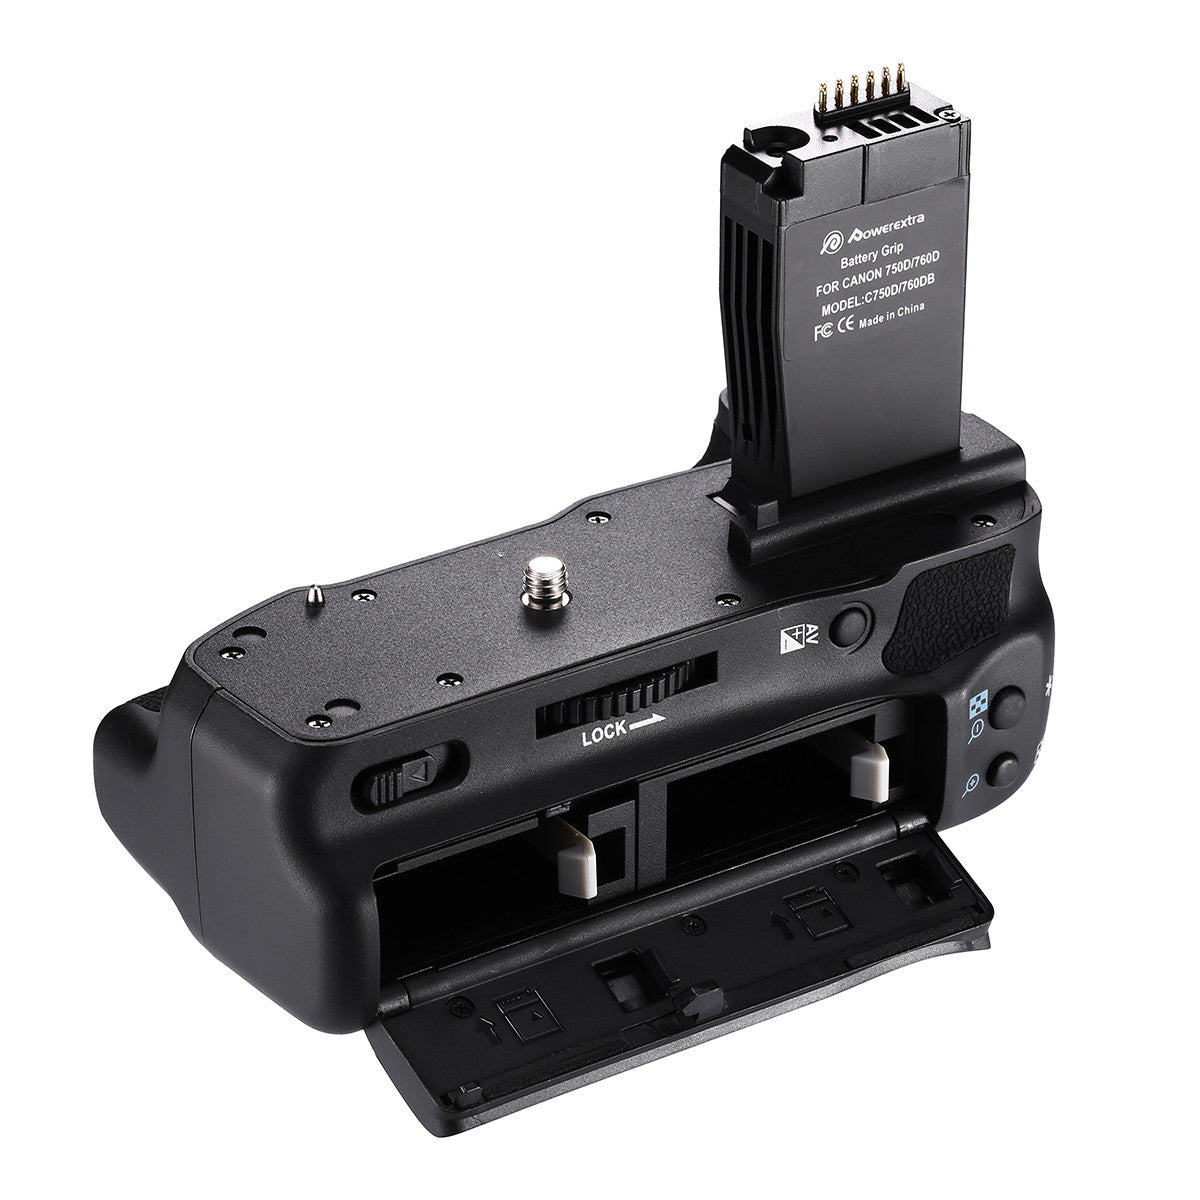 Powerextra BG-E18 Battery Grip for 750D/Rebel T6i, 760D/Rebel T6s Digital Camera